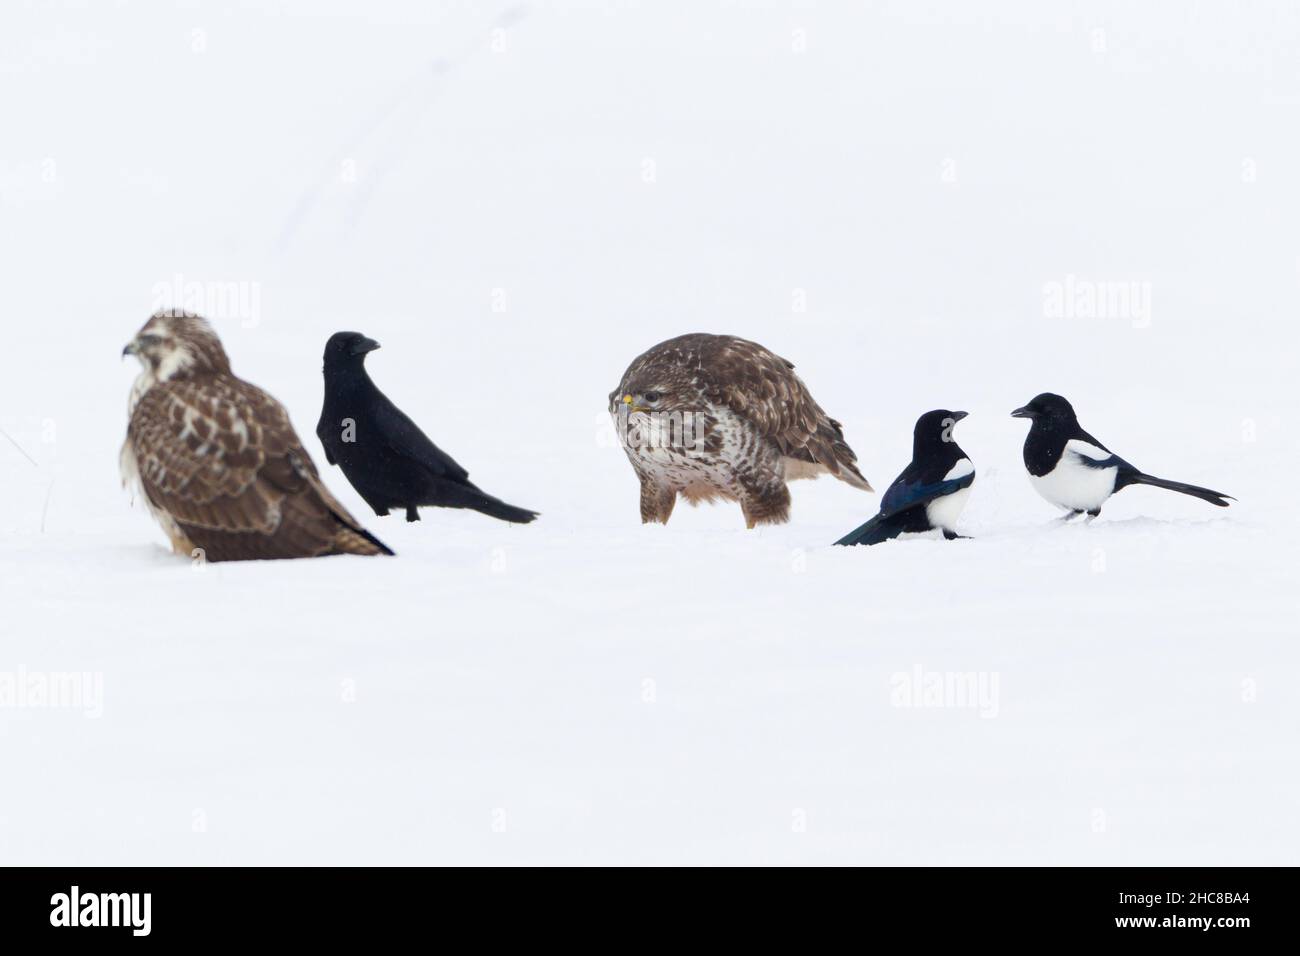 Buzzard commun, (Buteo buteo), le corbeau de carrion (Corvus corone), et les magpies, (Pica pica), se nourrir sur le carrion, en hiver,Basse-Saxe, Allemagne Banque D'Images